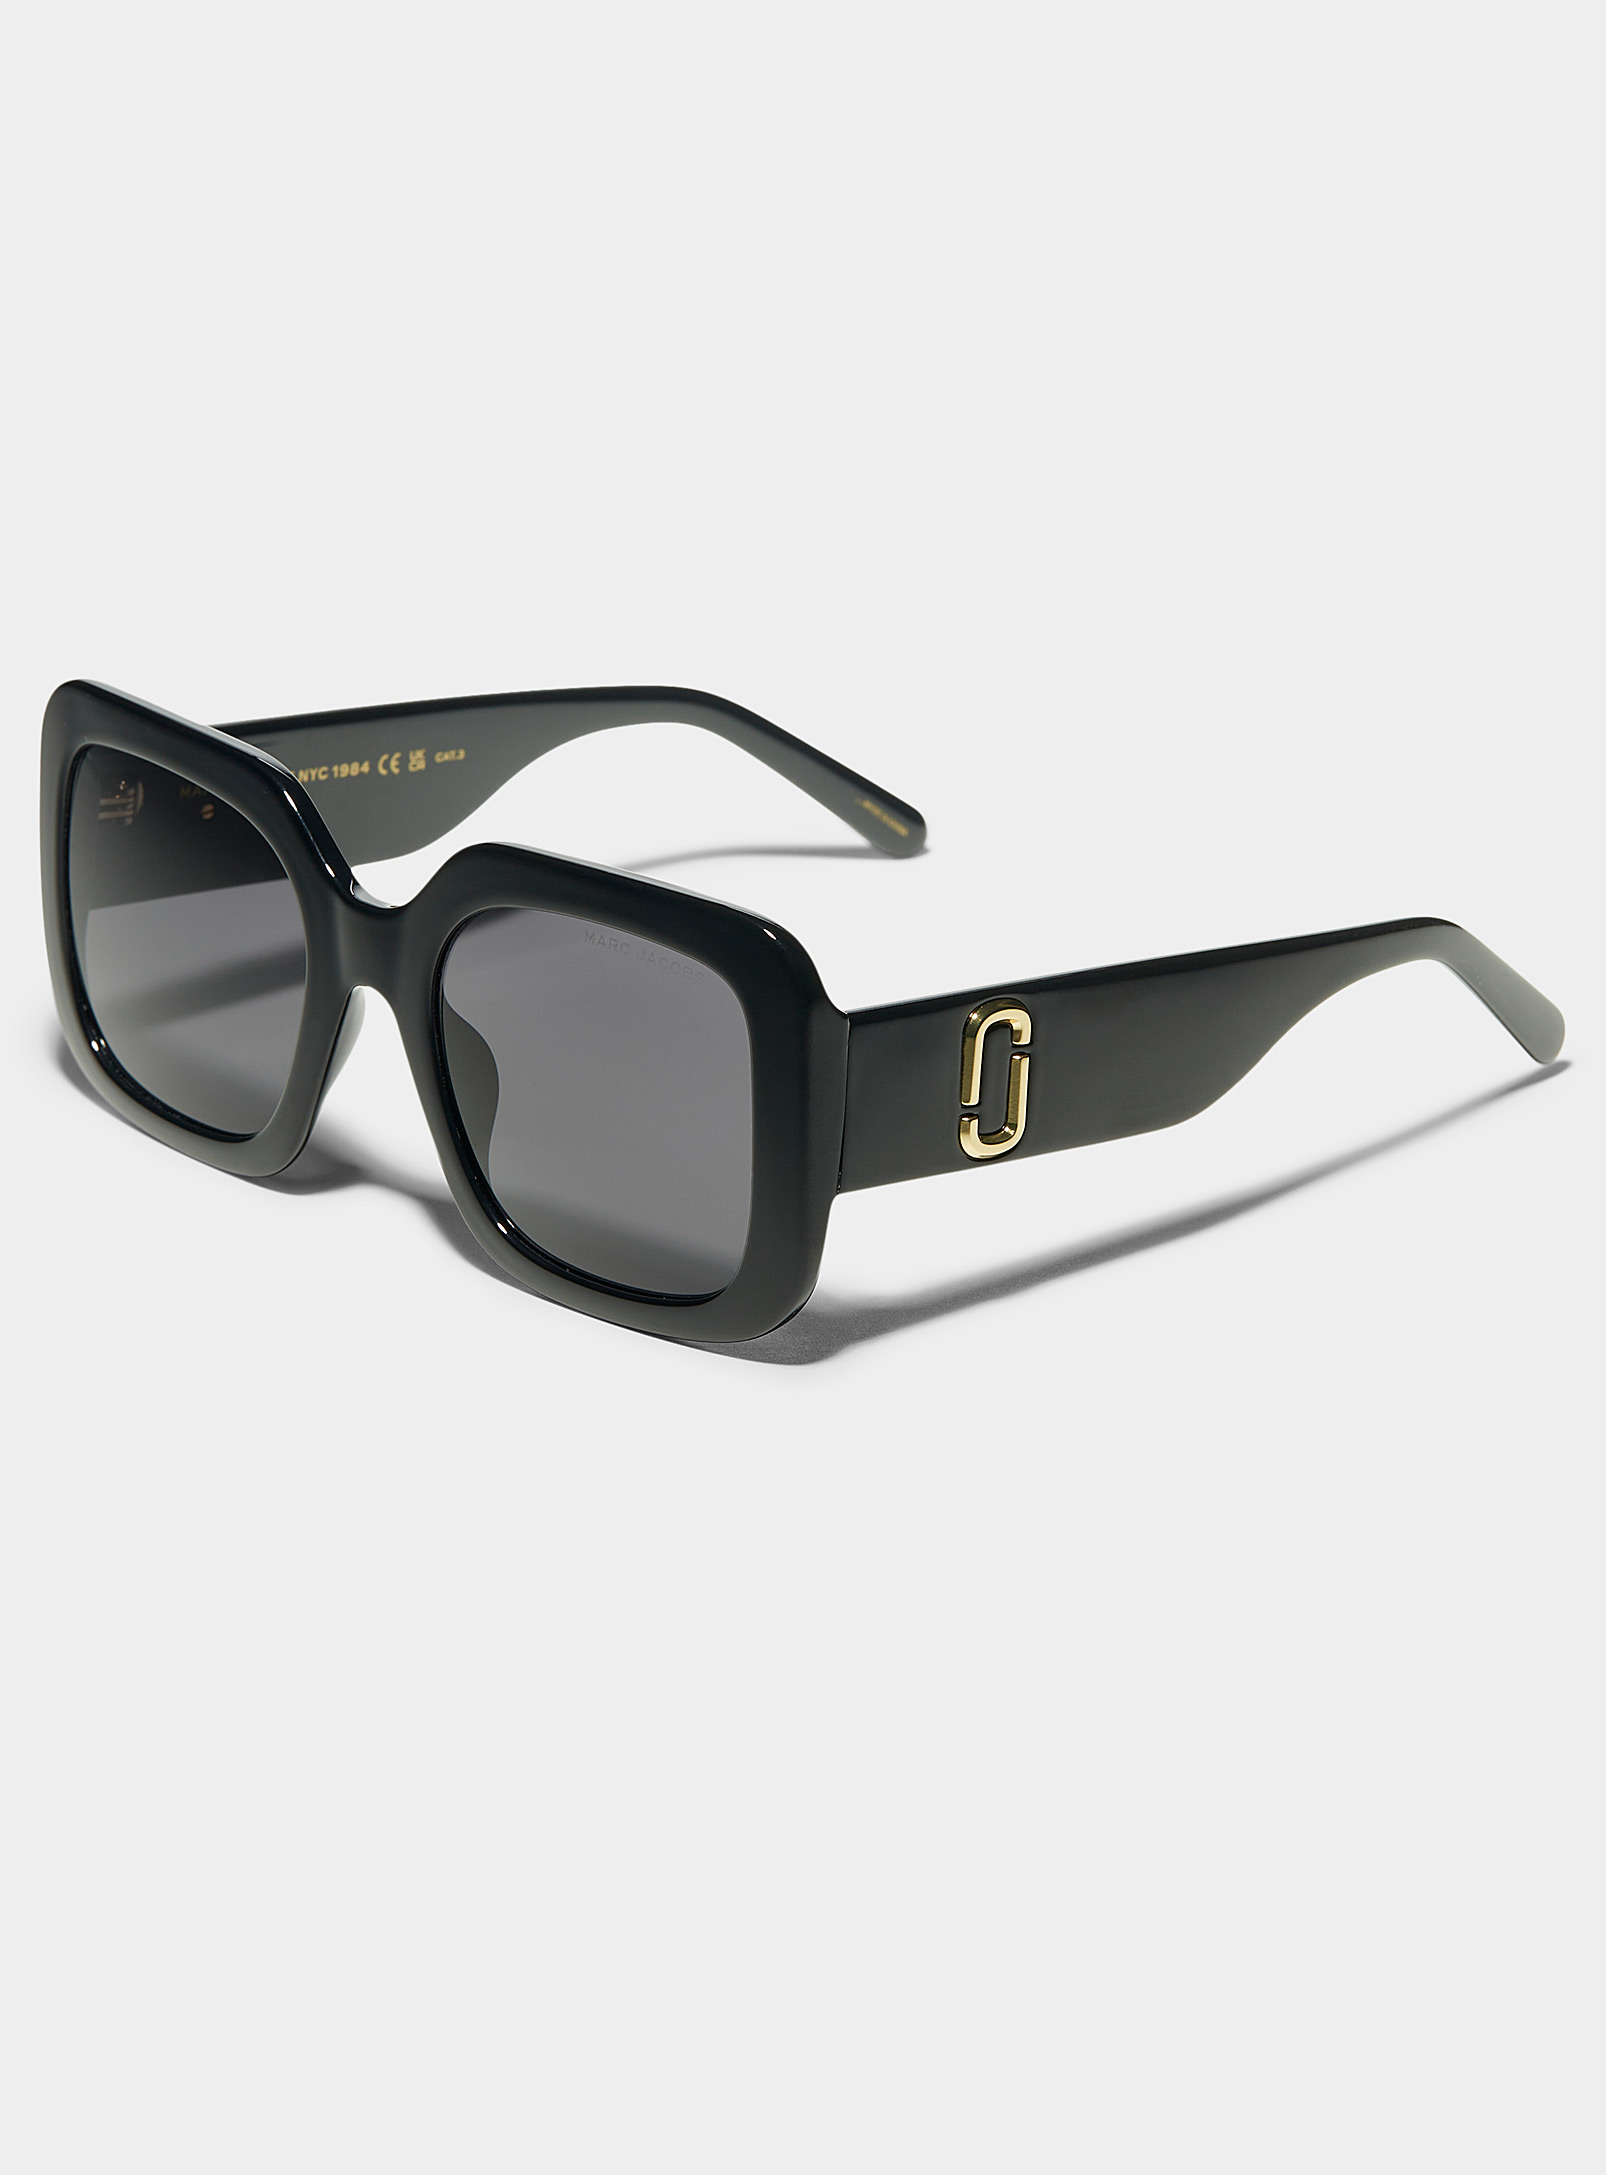 Marc Jacobs - Les lunettes de soleil carrées massives noir lustré